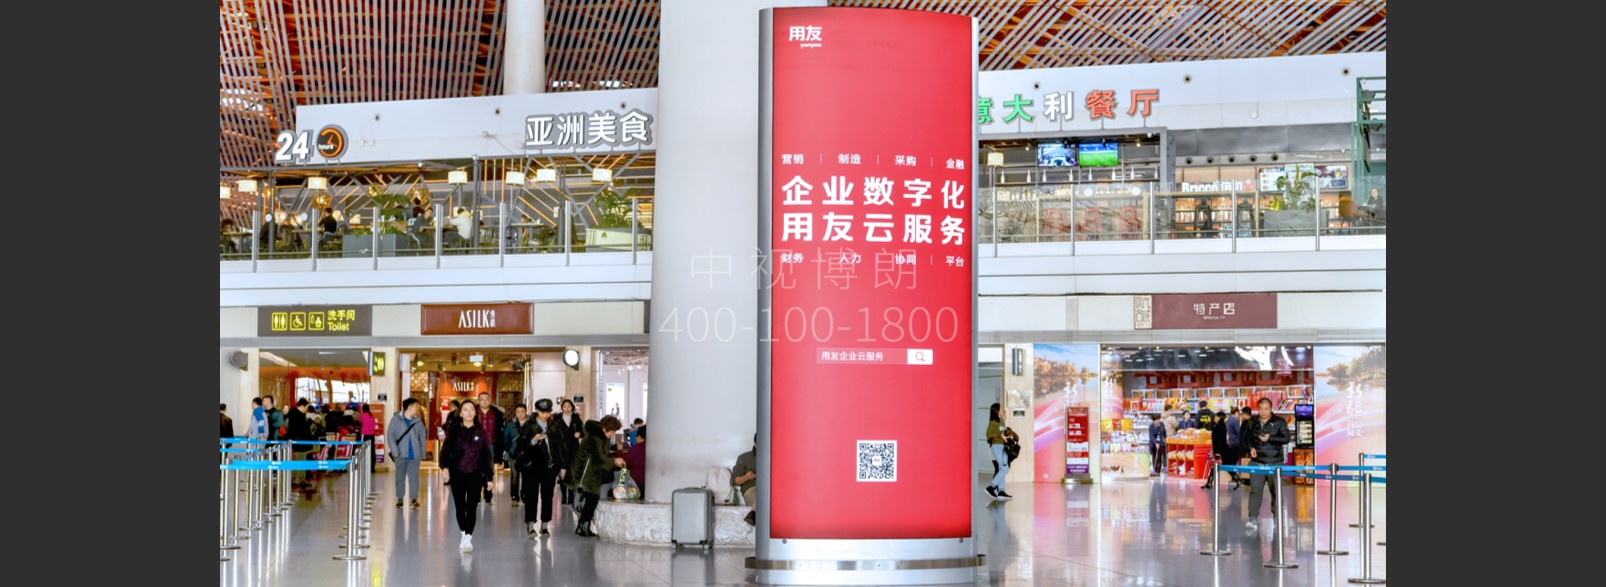 北京首都机场广告-T3出发大厅图腾灯箱J016